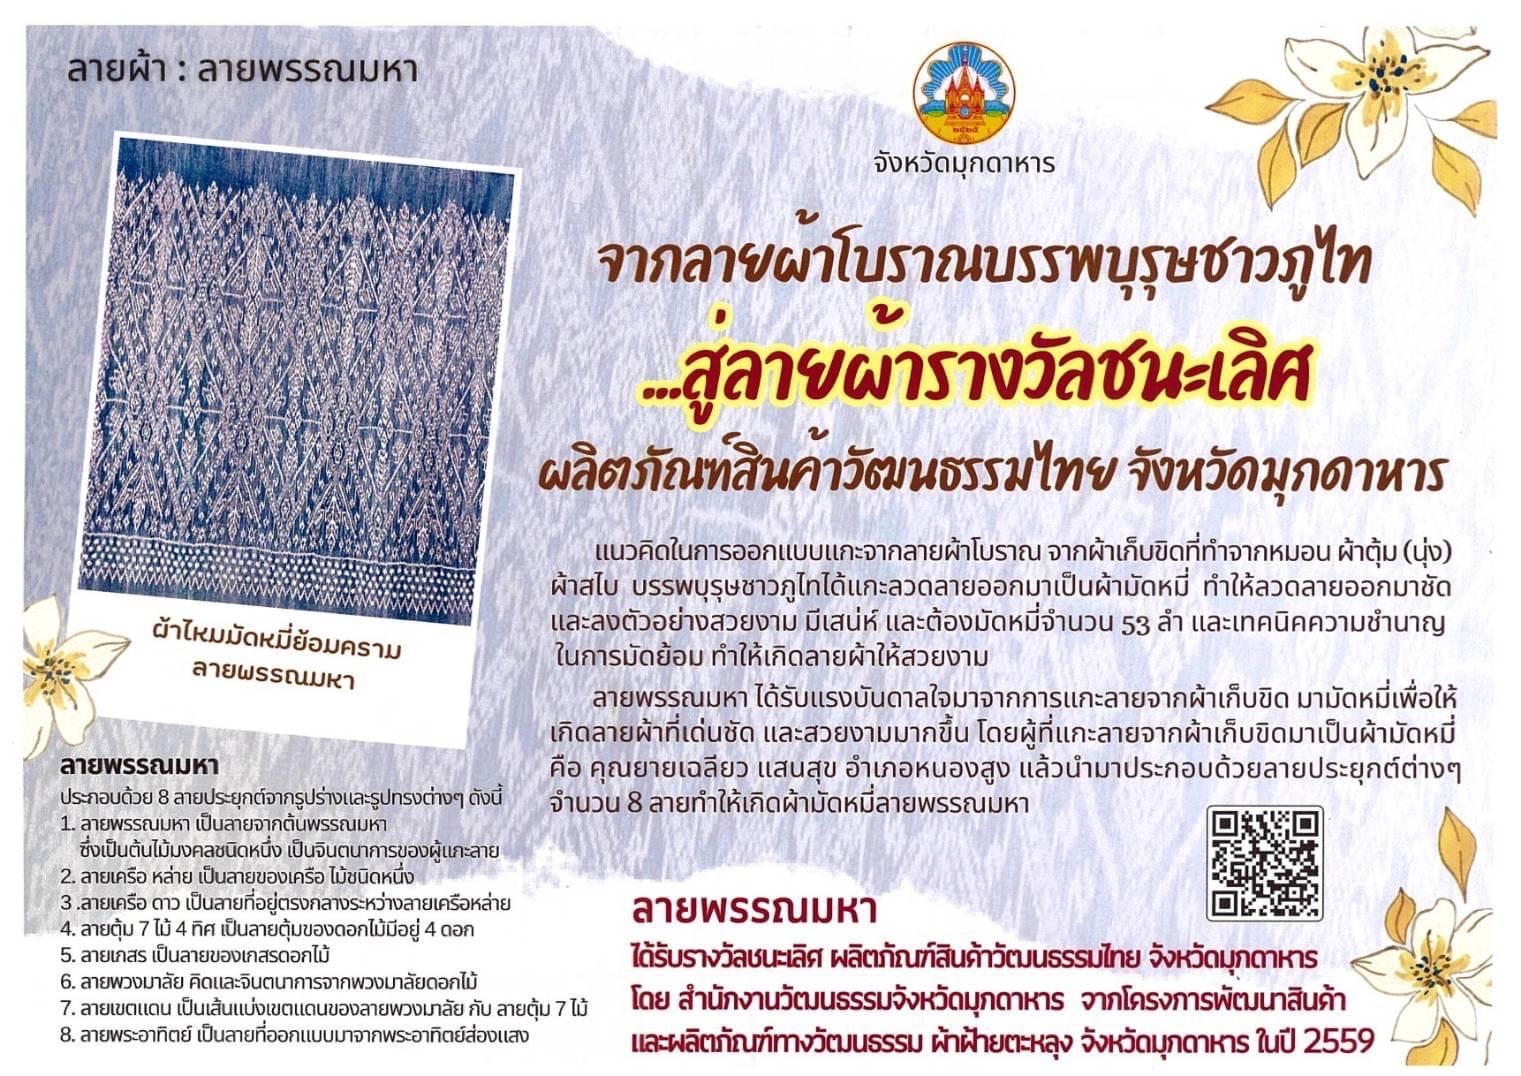 ลายผ้า “ลายพรรณมหา” จ.มุกดาหาร  เป็นลายผ้ารางวัลชนะเลิศ ผลิตภัณฑ์สินค้าวัฒนธรรมไทย